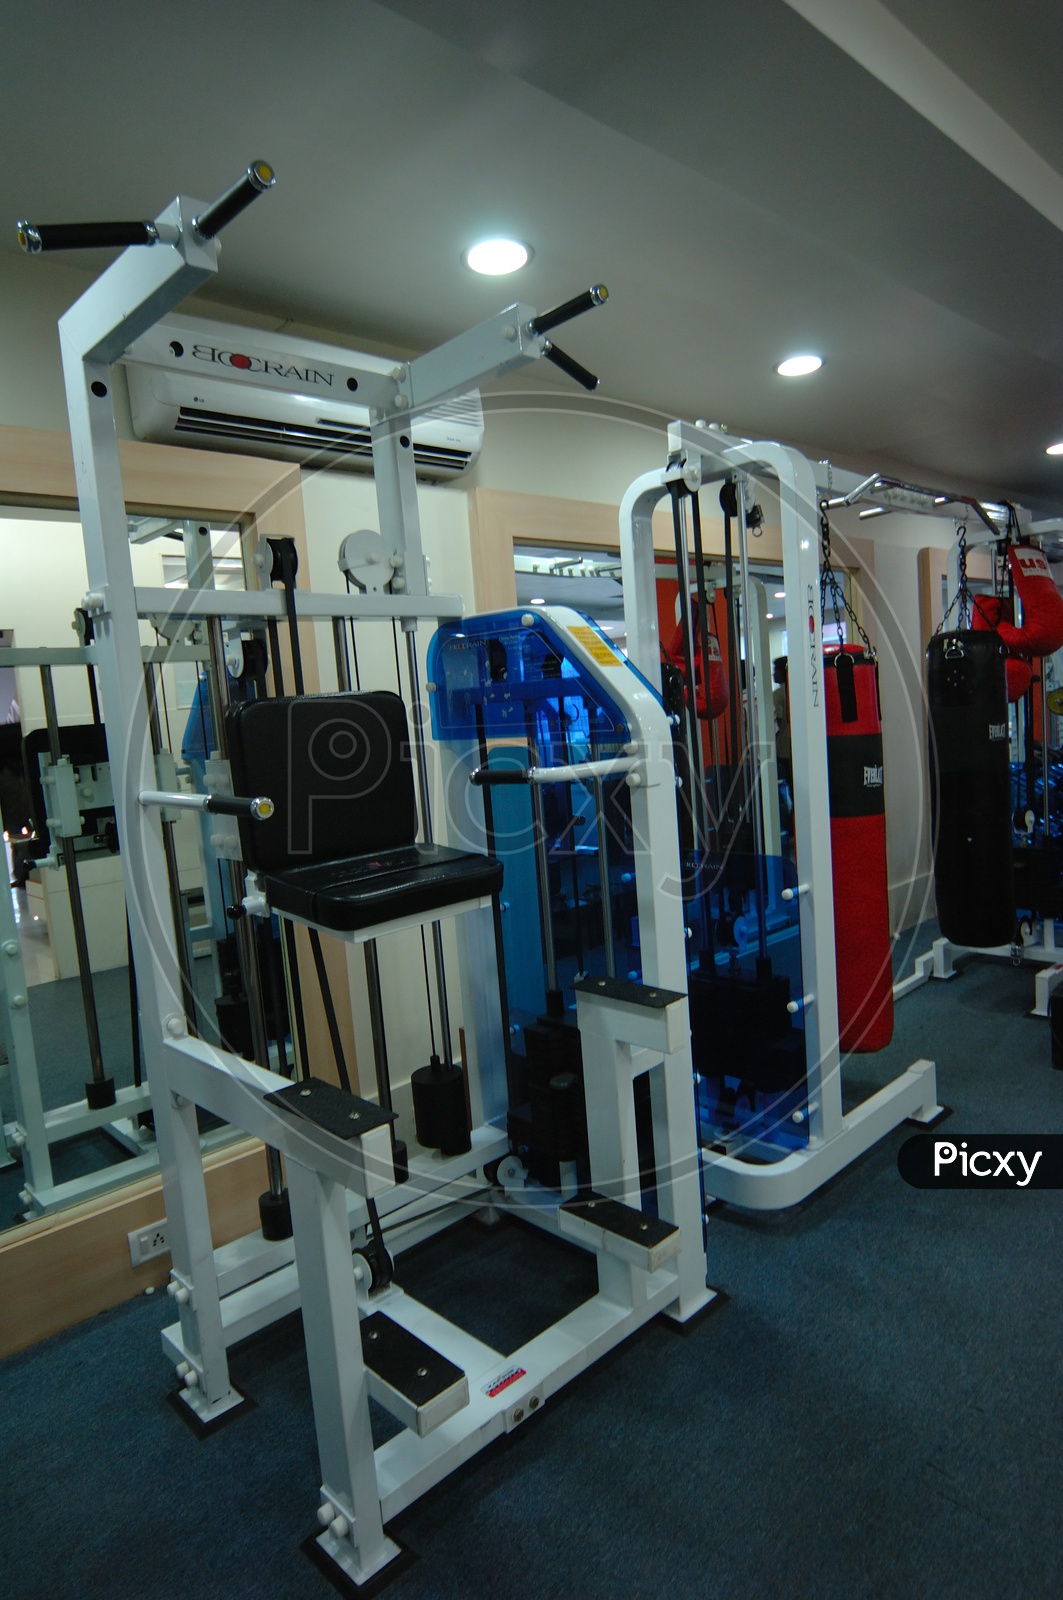 Gym equipment in a gym